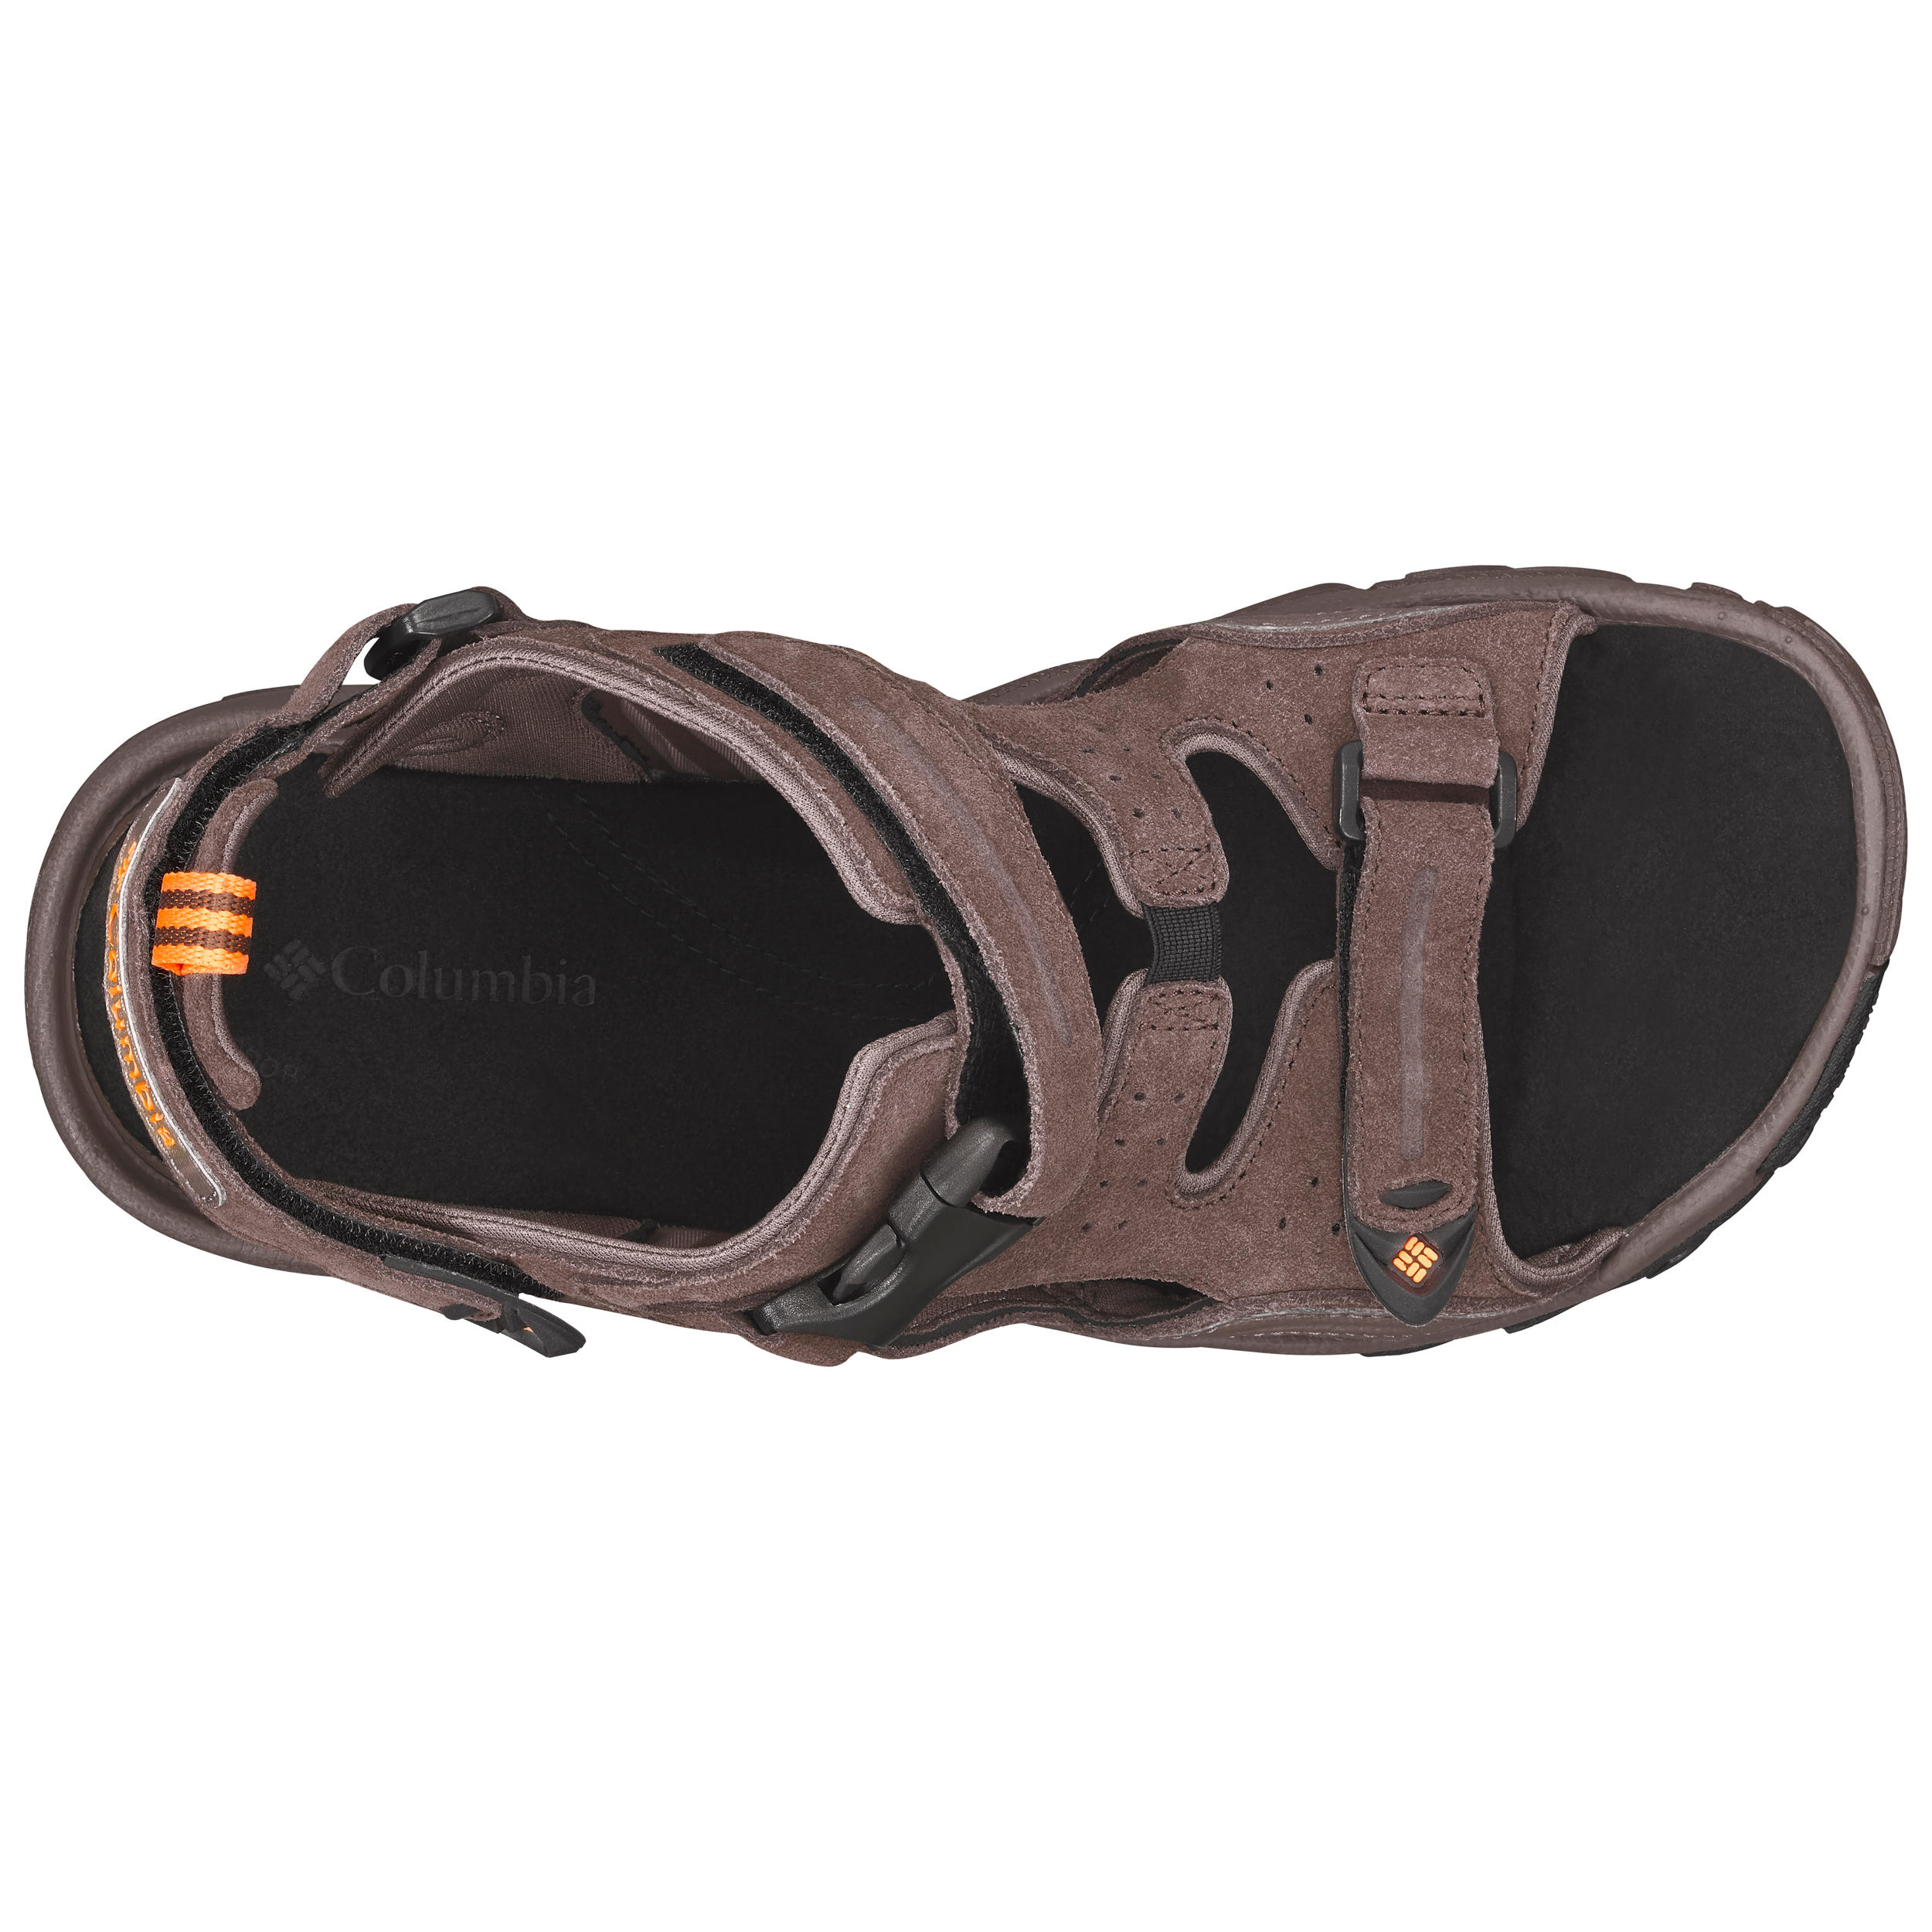 Men's walking sandals - Columbia Ridge Venture - Brown 3/6